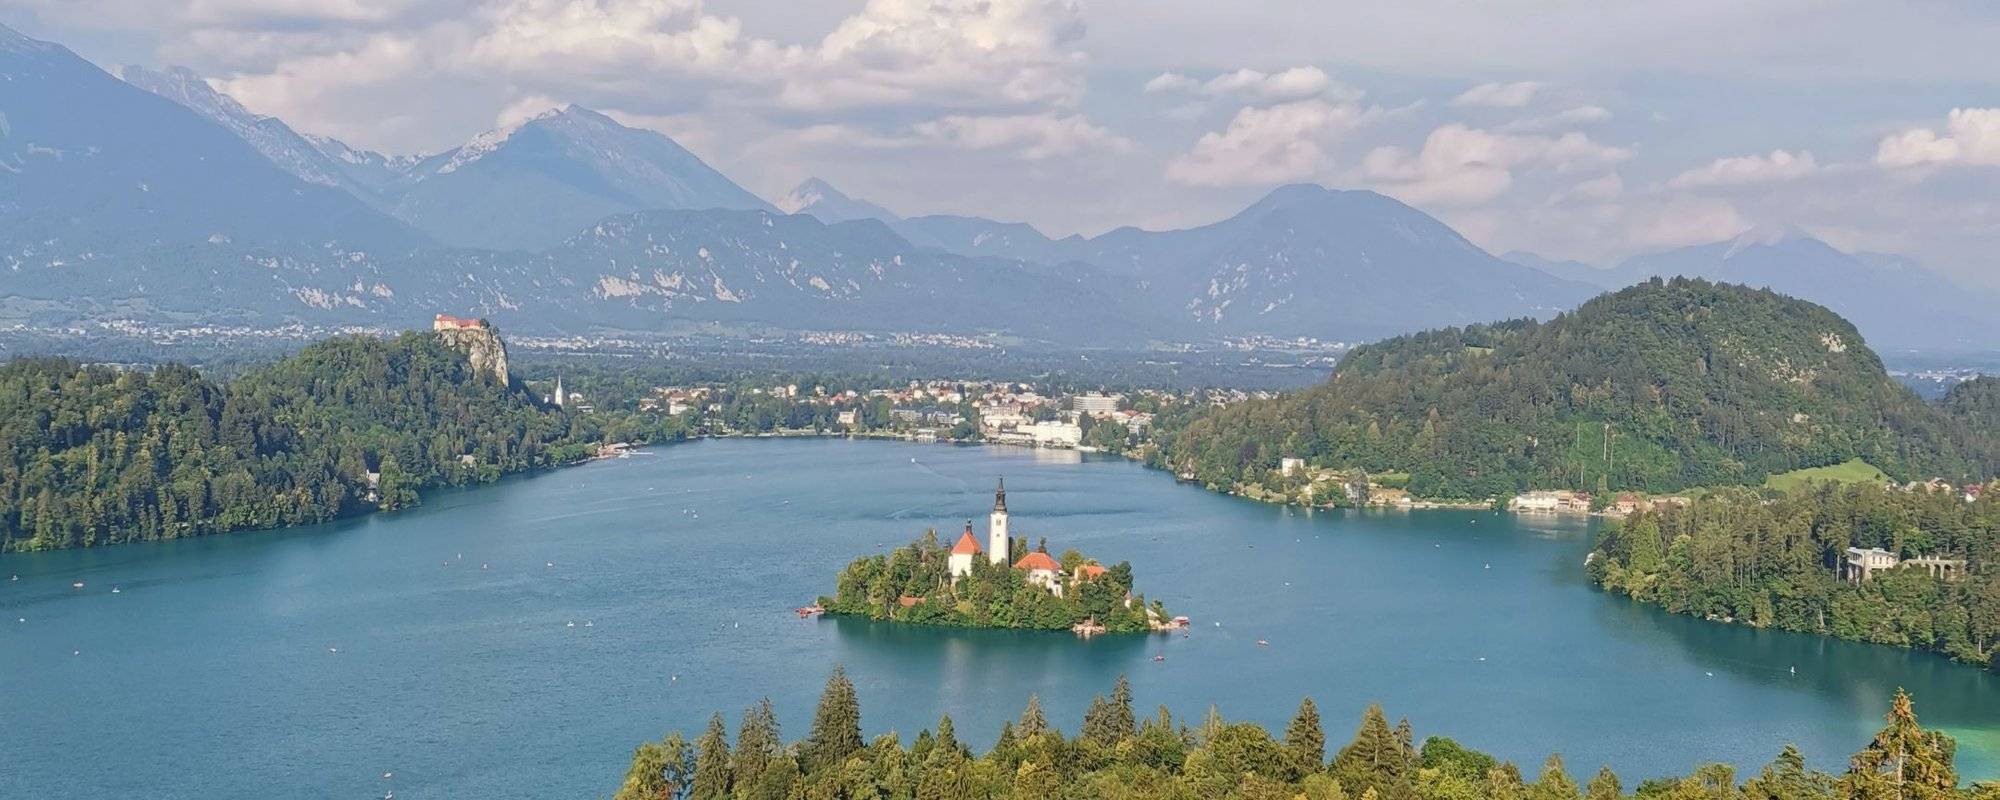 Romantic Lake Bled, Slovenia